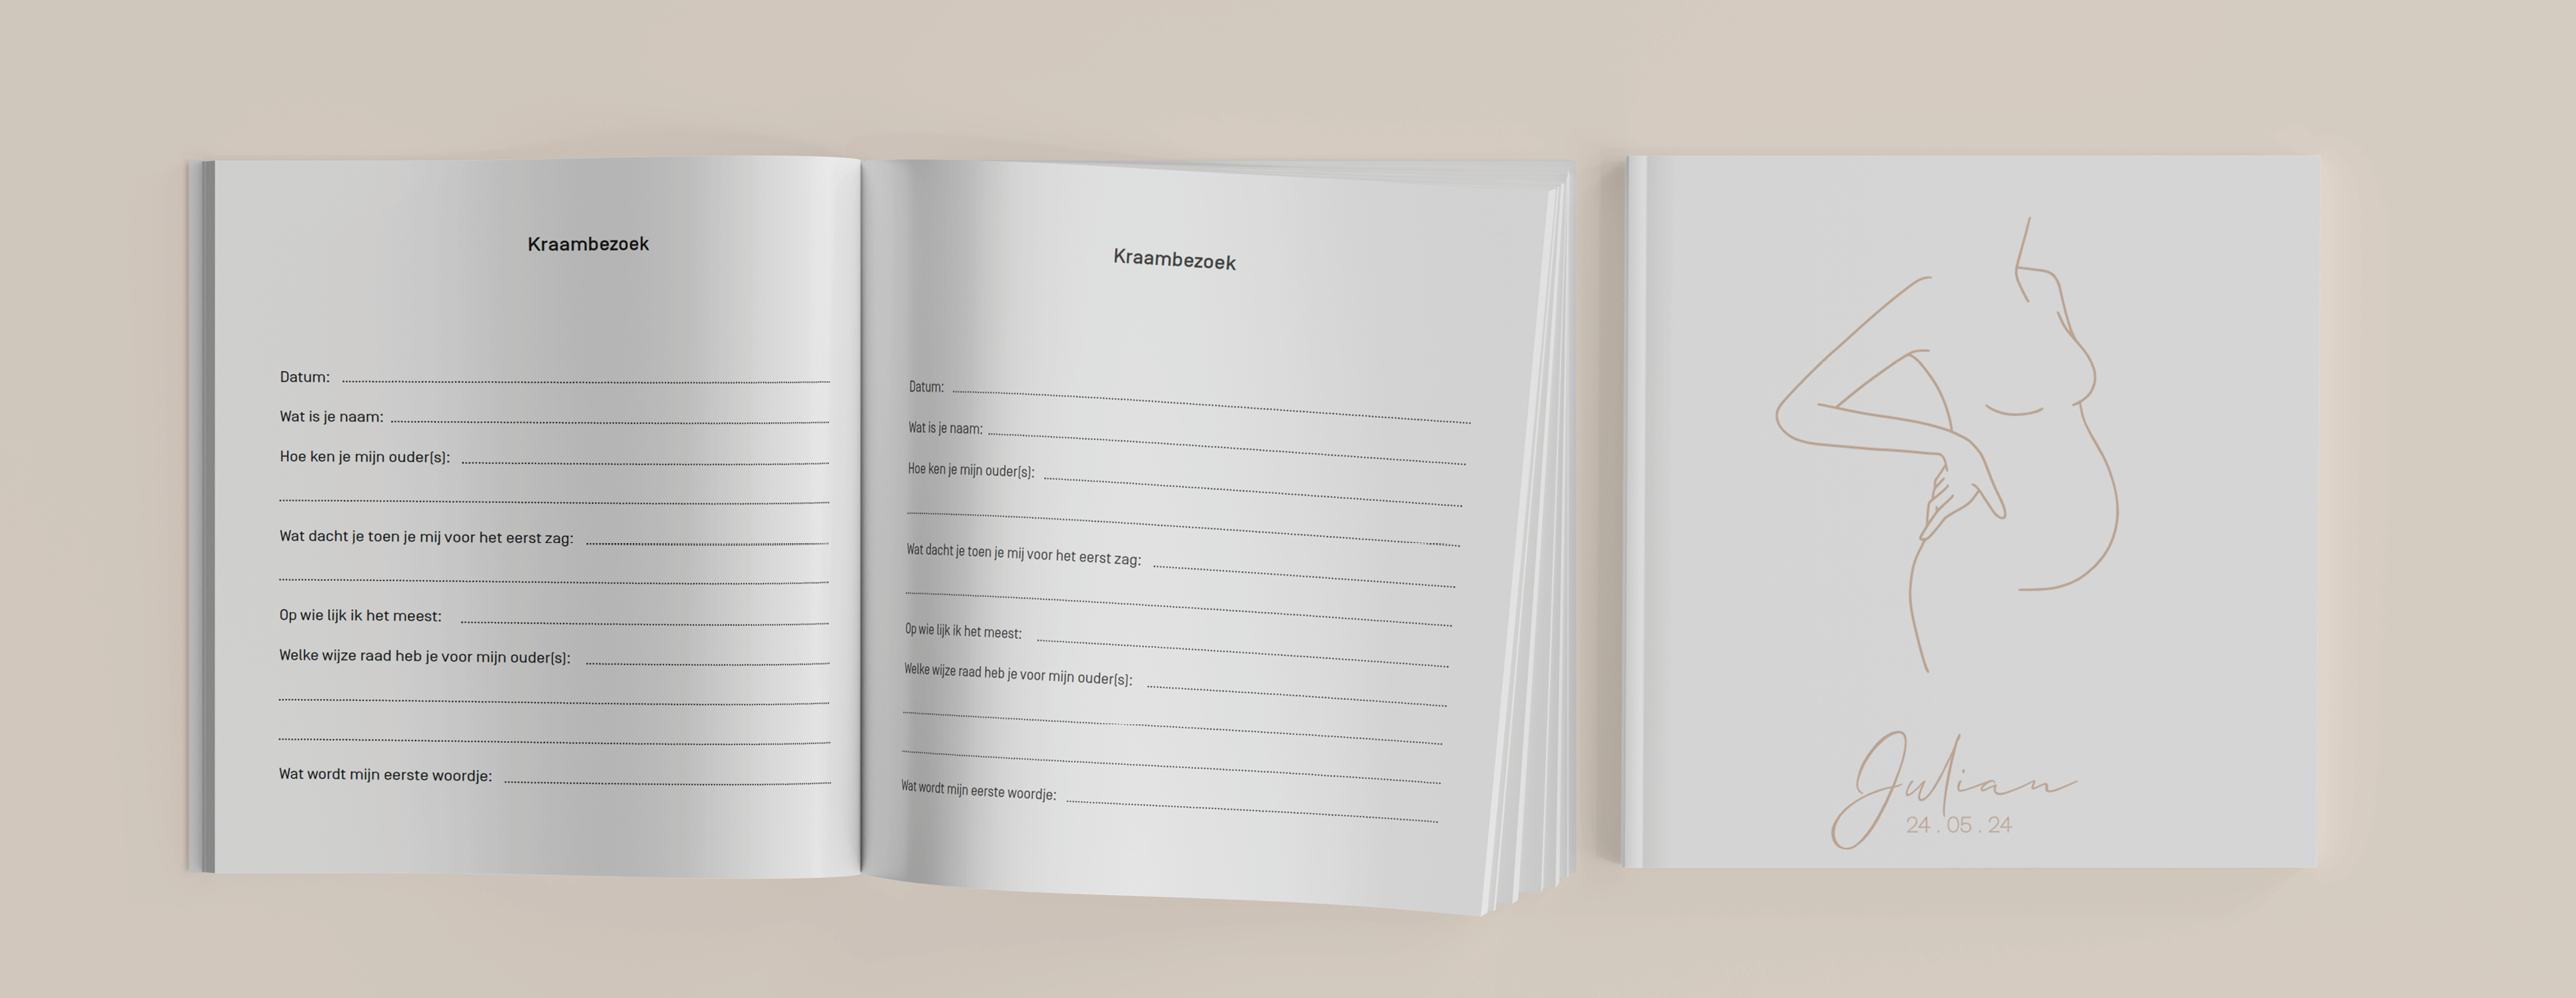 Ontwerp zelf het kraambezoekboek! De omslag van het kraambezoekboek pas je helemaal zelf naar wens aan in de editor